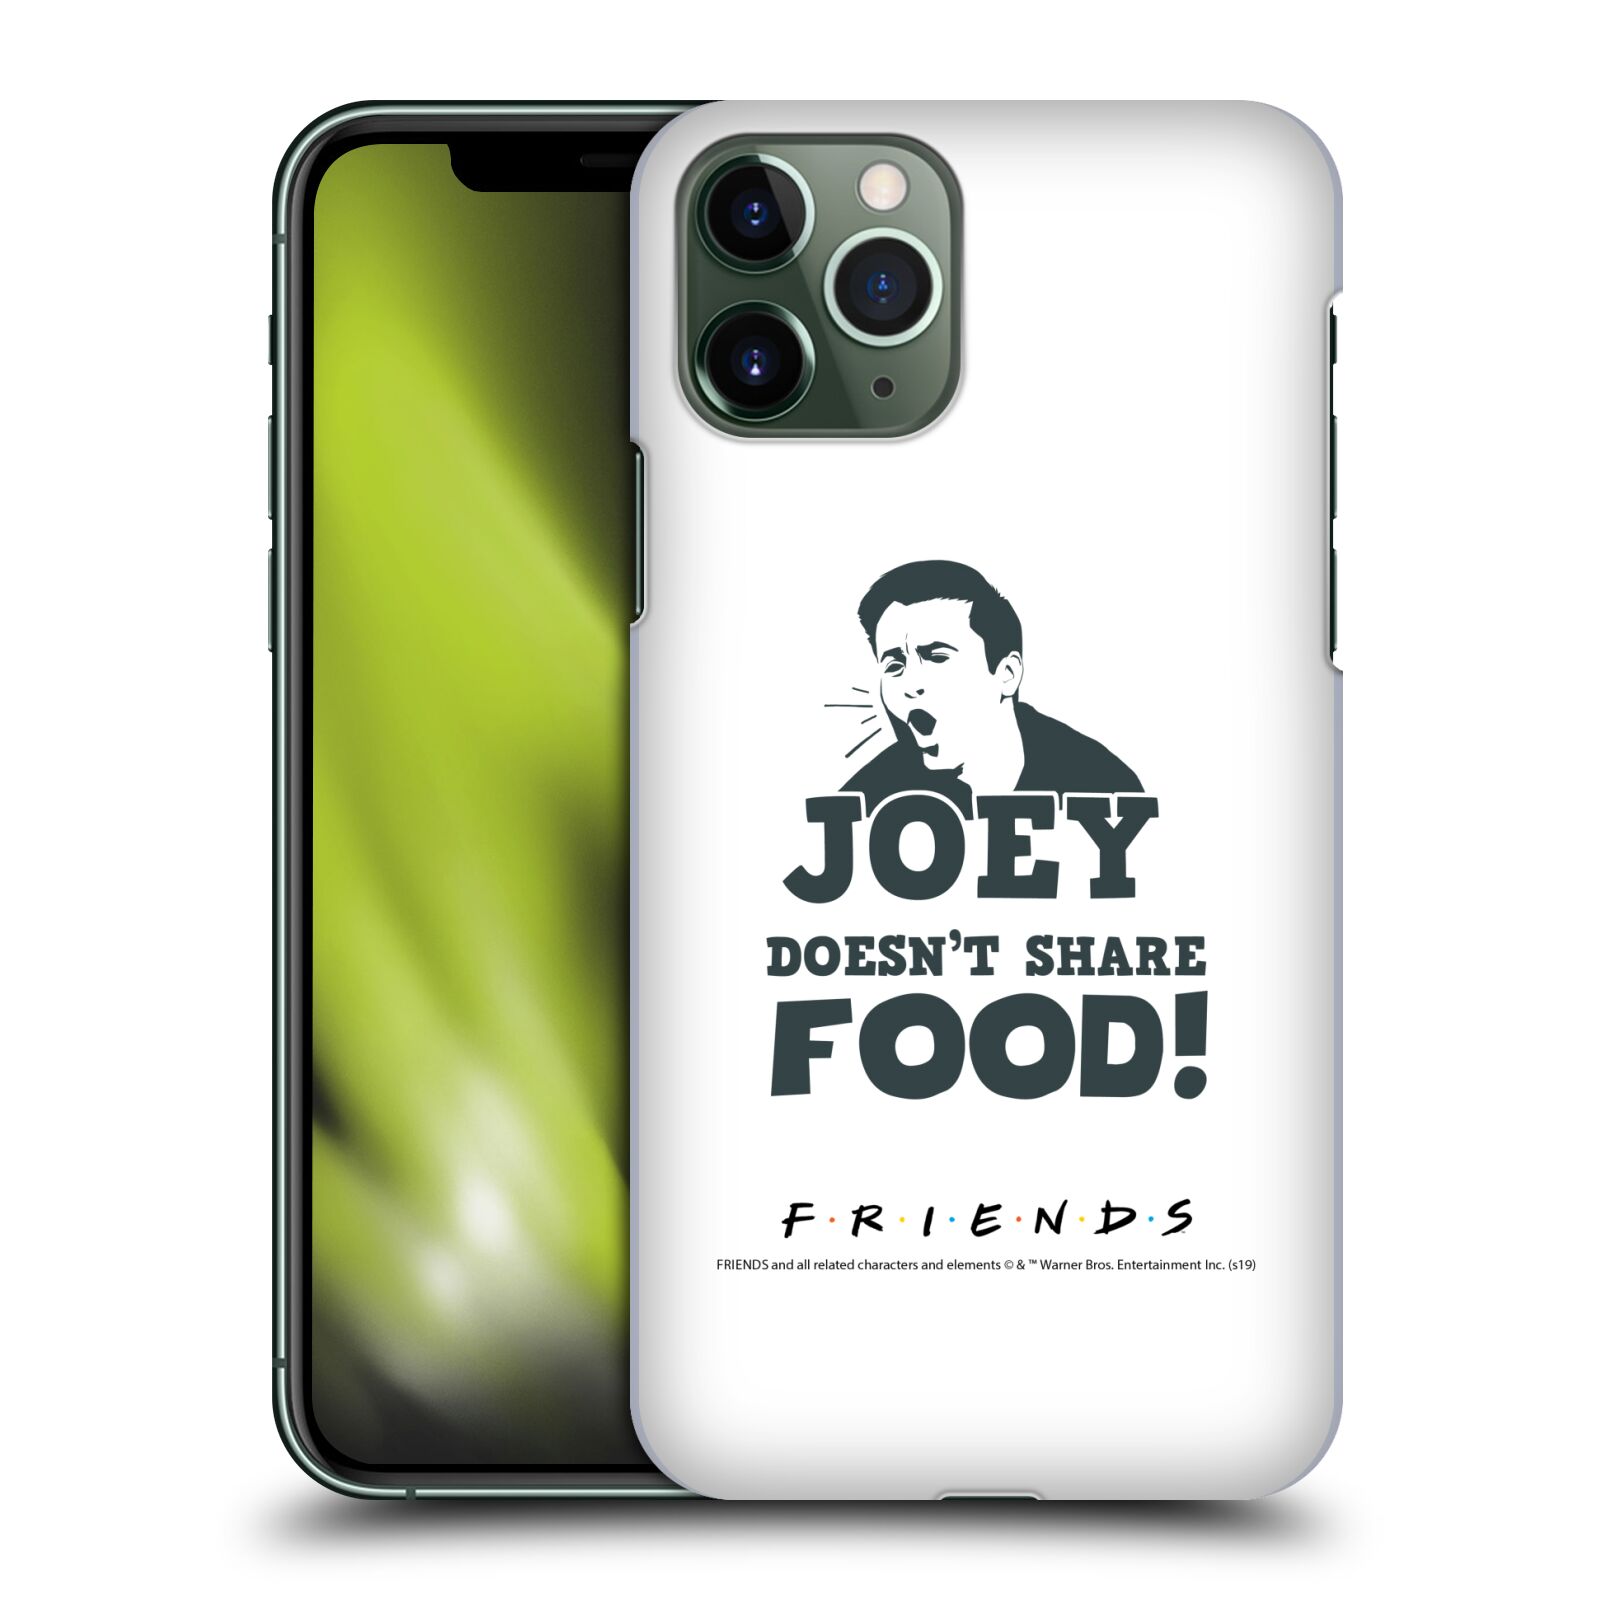 Pouzdro na mobil Apple Iphone 11 PRO - HEAD CASE - Seriál Přátelé - Joey se o jídlo nedělí